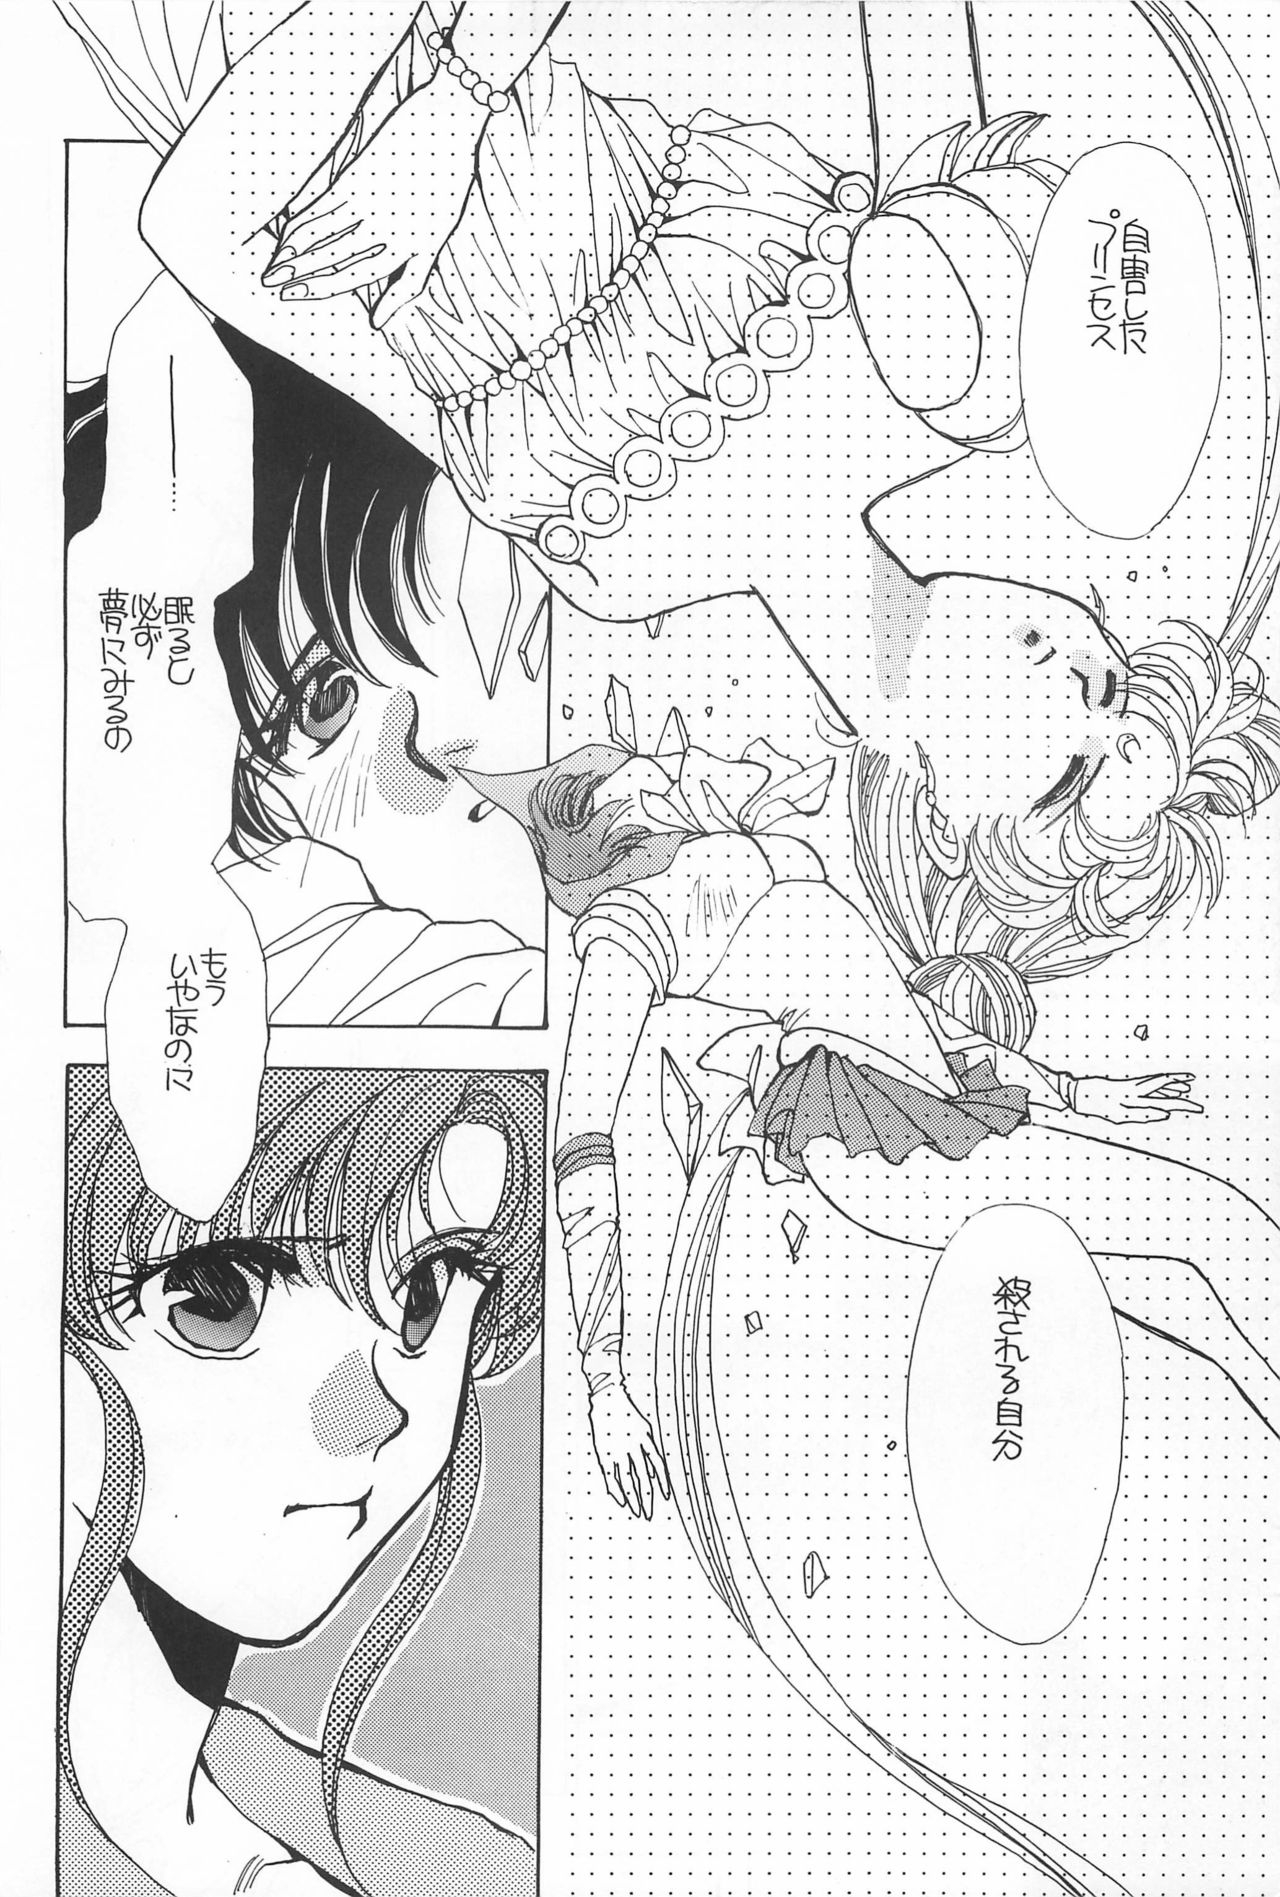 [Hello World (Muttri Moony)] Kaze no You ni Yume no You ni - Sailor Moon Collection (Sailor Moon) 183